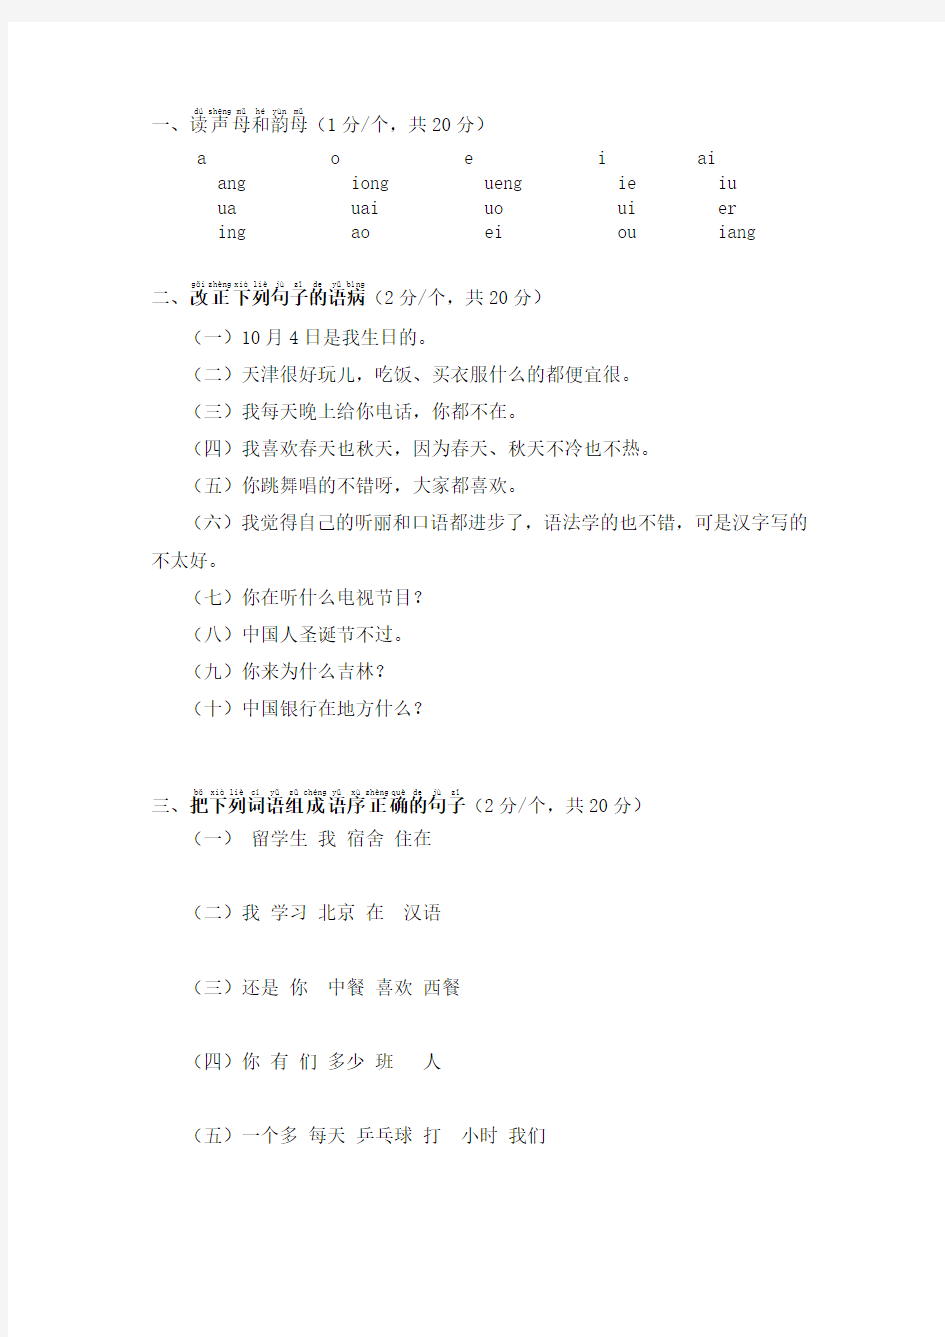 (完整版)发展汉语初级口语上期末考试卷